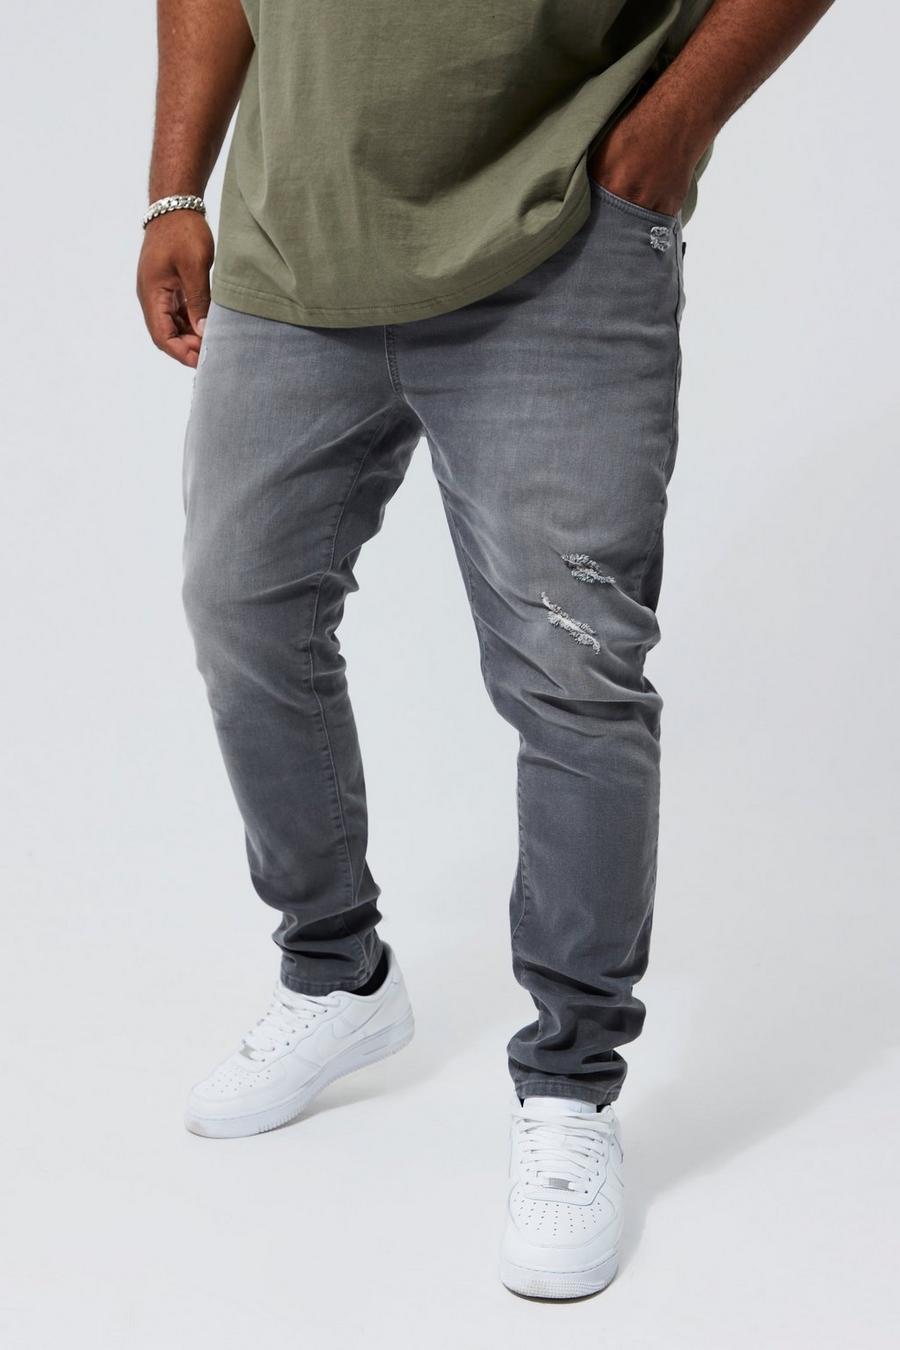 אפור ביניים grigio סקיני ג'ינס נמתח עם קרעים בברך, מידות גדולות    